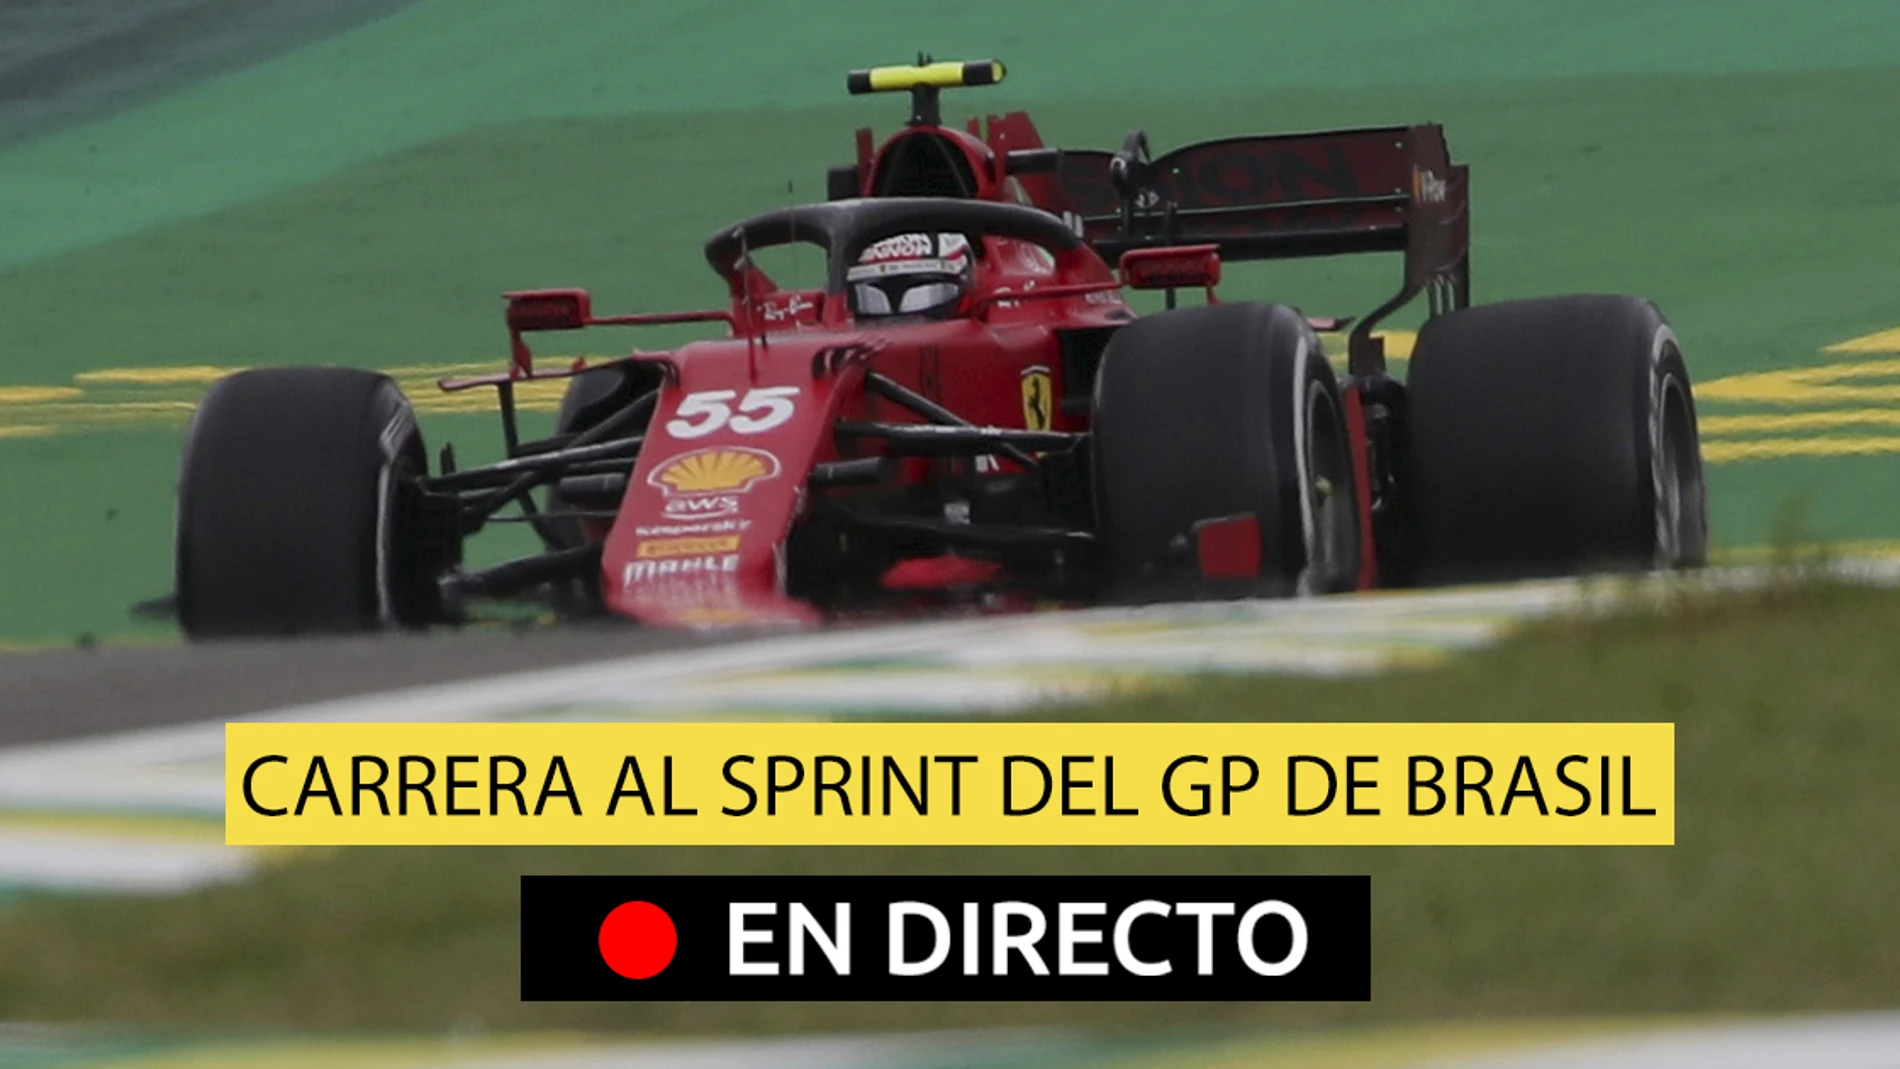 F1 en directo hoy I Resultado de la carrera al sprint del GP de Brasil:  victoria para Bottas